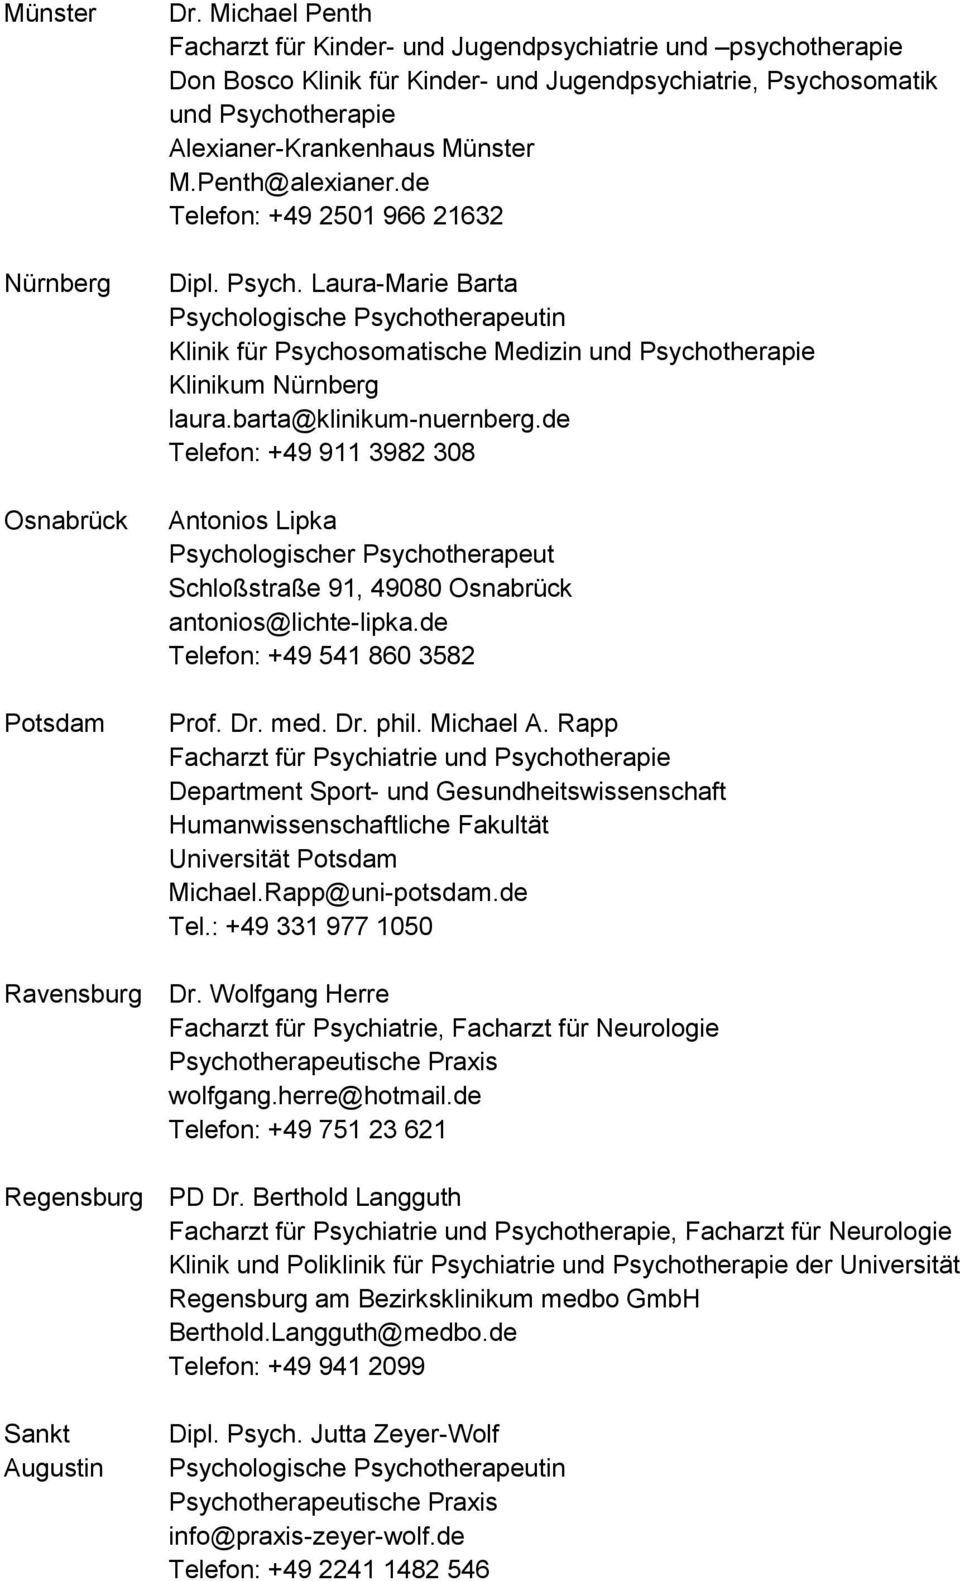 Penth@alexianer.de Telefon: +49 2501 966 21632 Dipl. Psych. Laura-Marie Barta Psychologische Psychotherapeutin Klinik für Psychosomatische Medizin und Psychotherapie Klinikum Nürnberg laura.